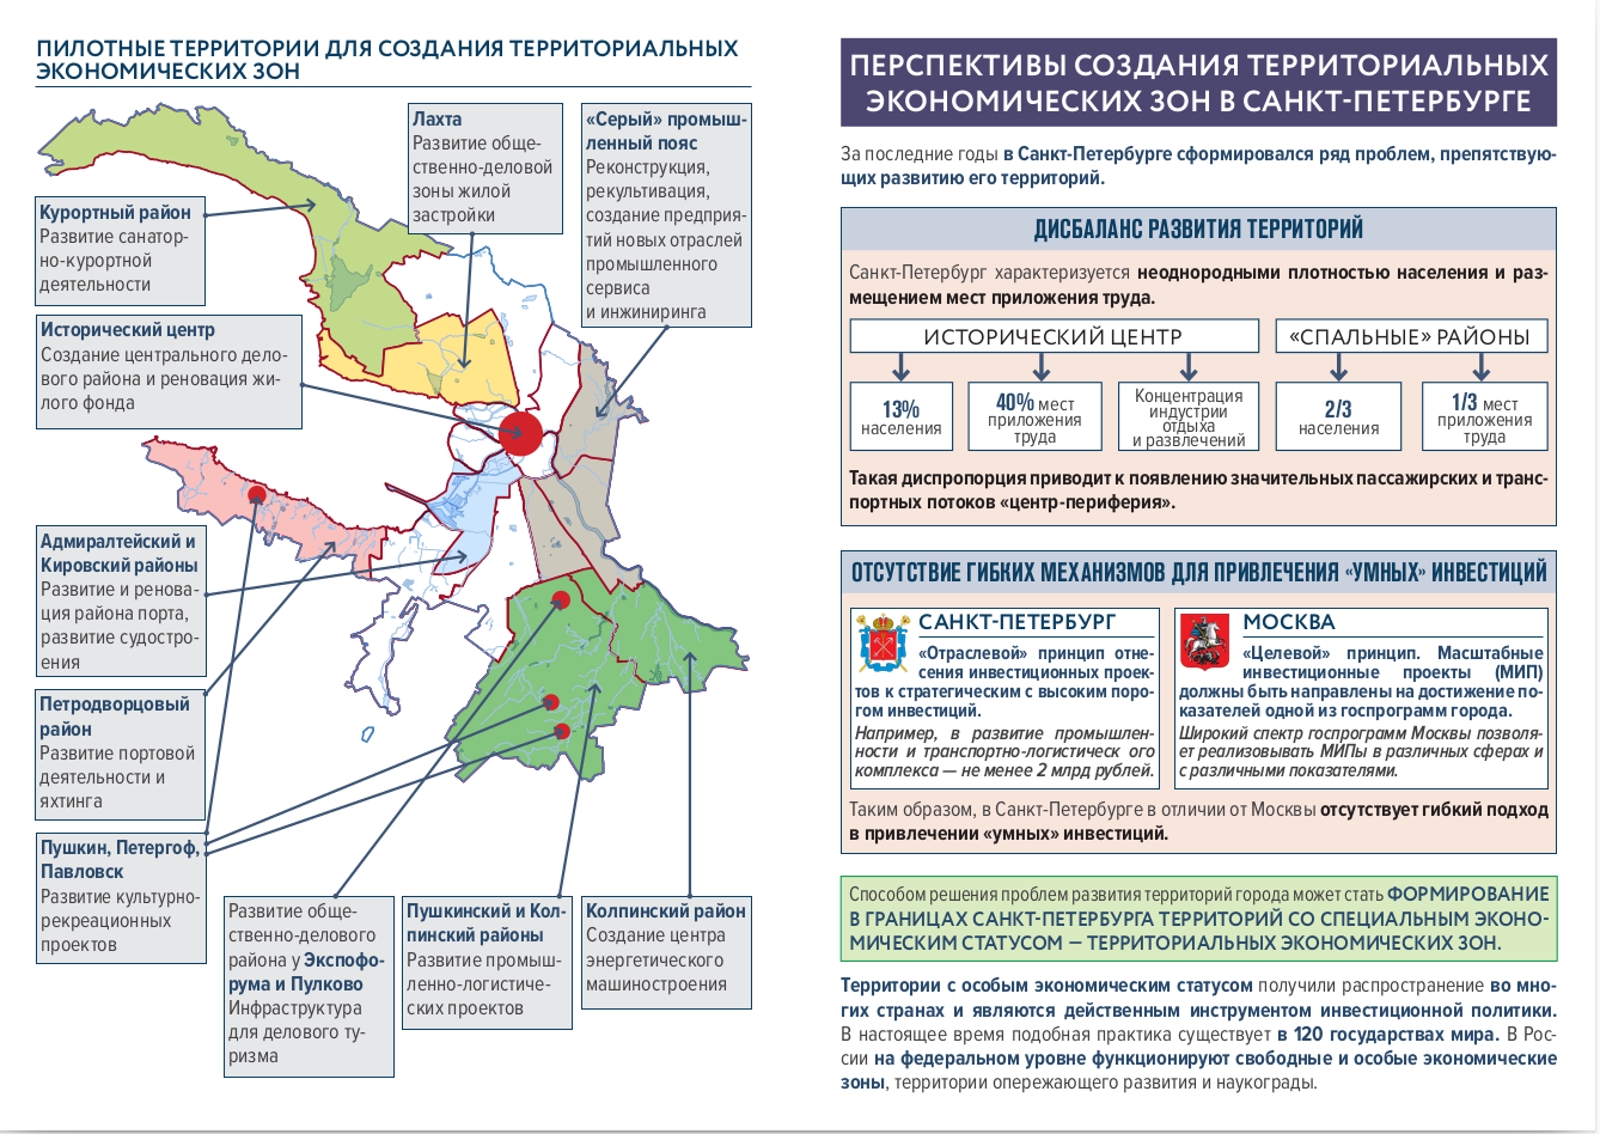 Особая экономическая зона Санкт-Петербург на карте. Особые экономические зоны Санкт-Петербурга и Ленинградской области.